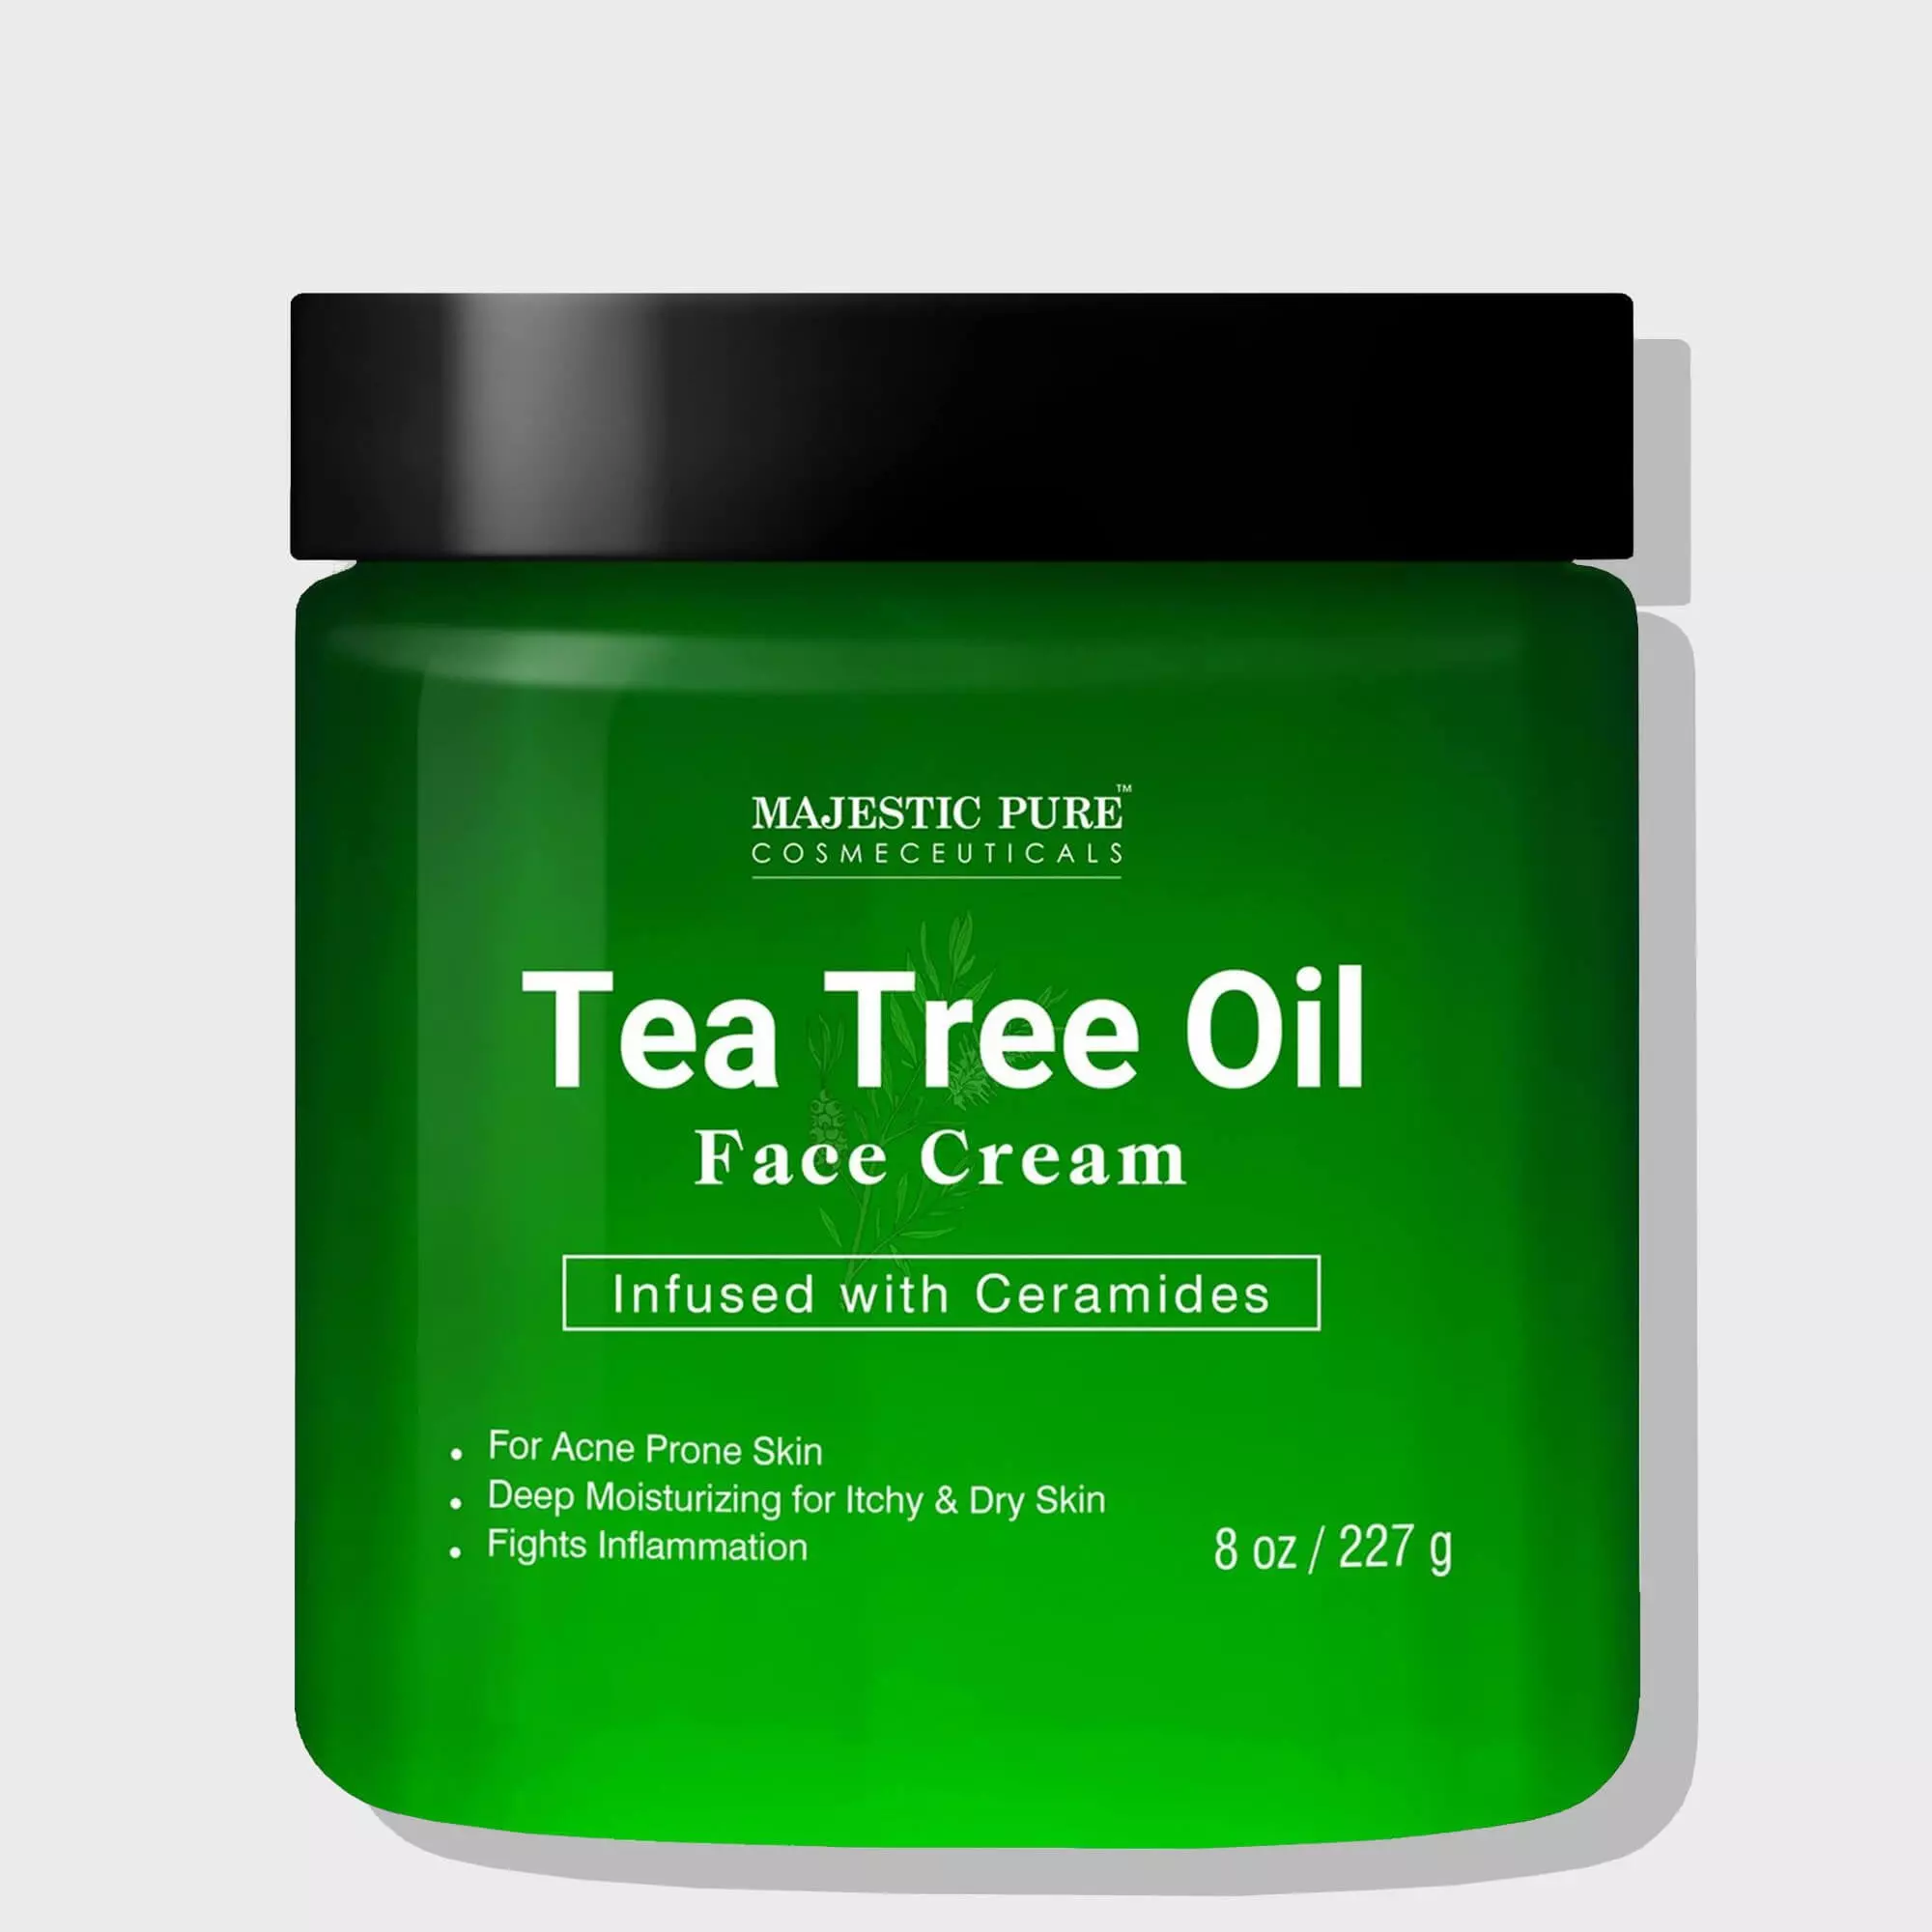 Tea Tree Oil Face Cream by Majestic Pure - Therapeutic Grade